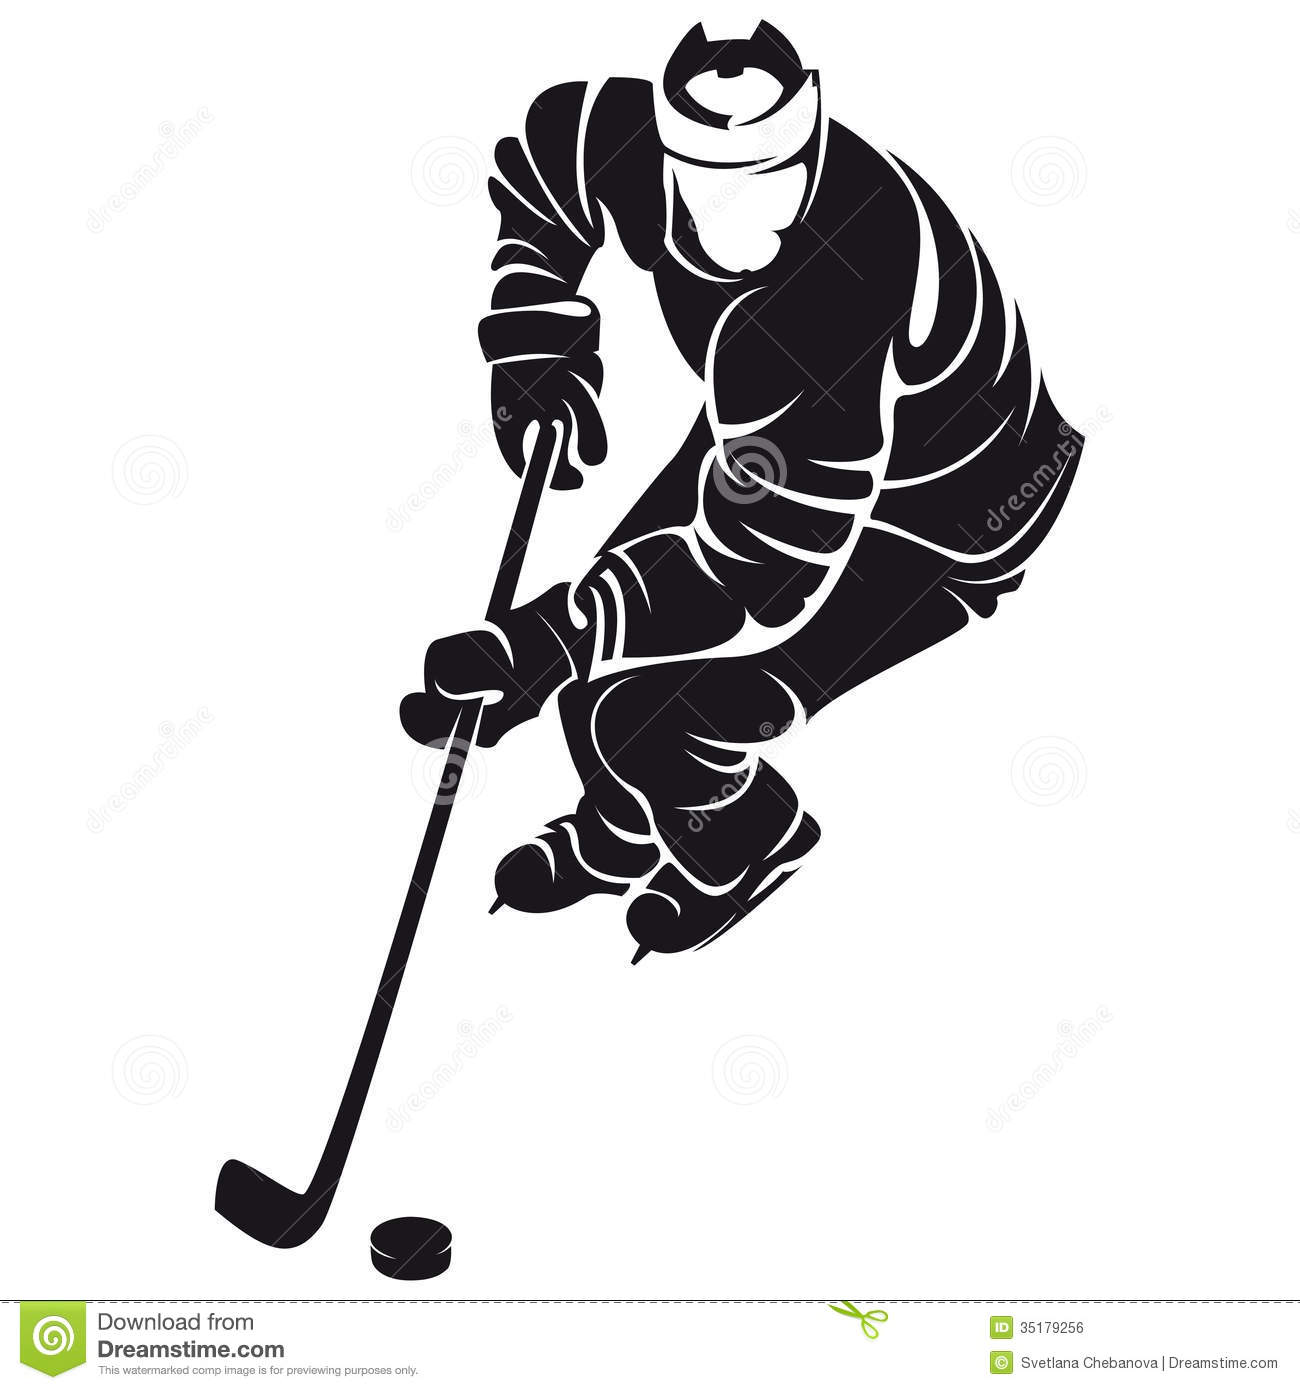 Joueur De Hockey Silhouette Image Libre De Droits   Image  35179256